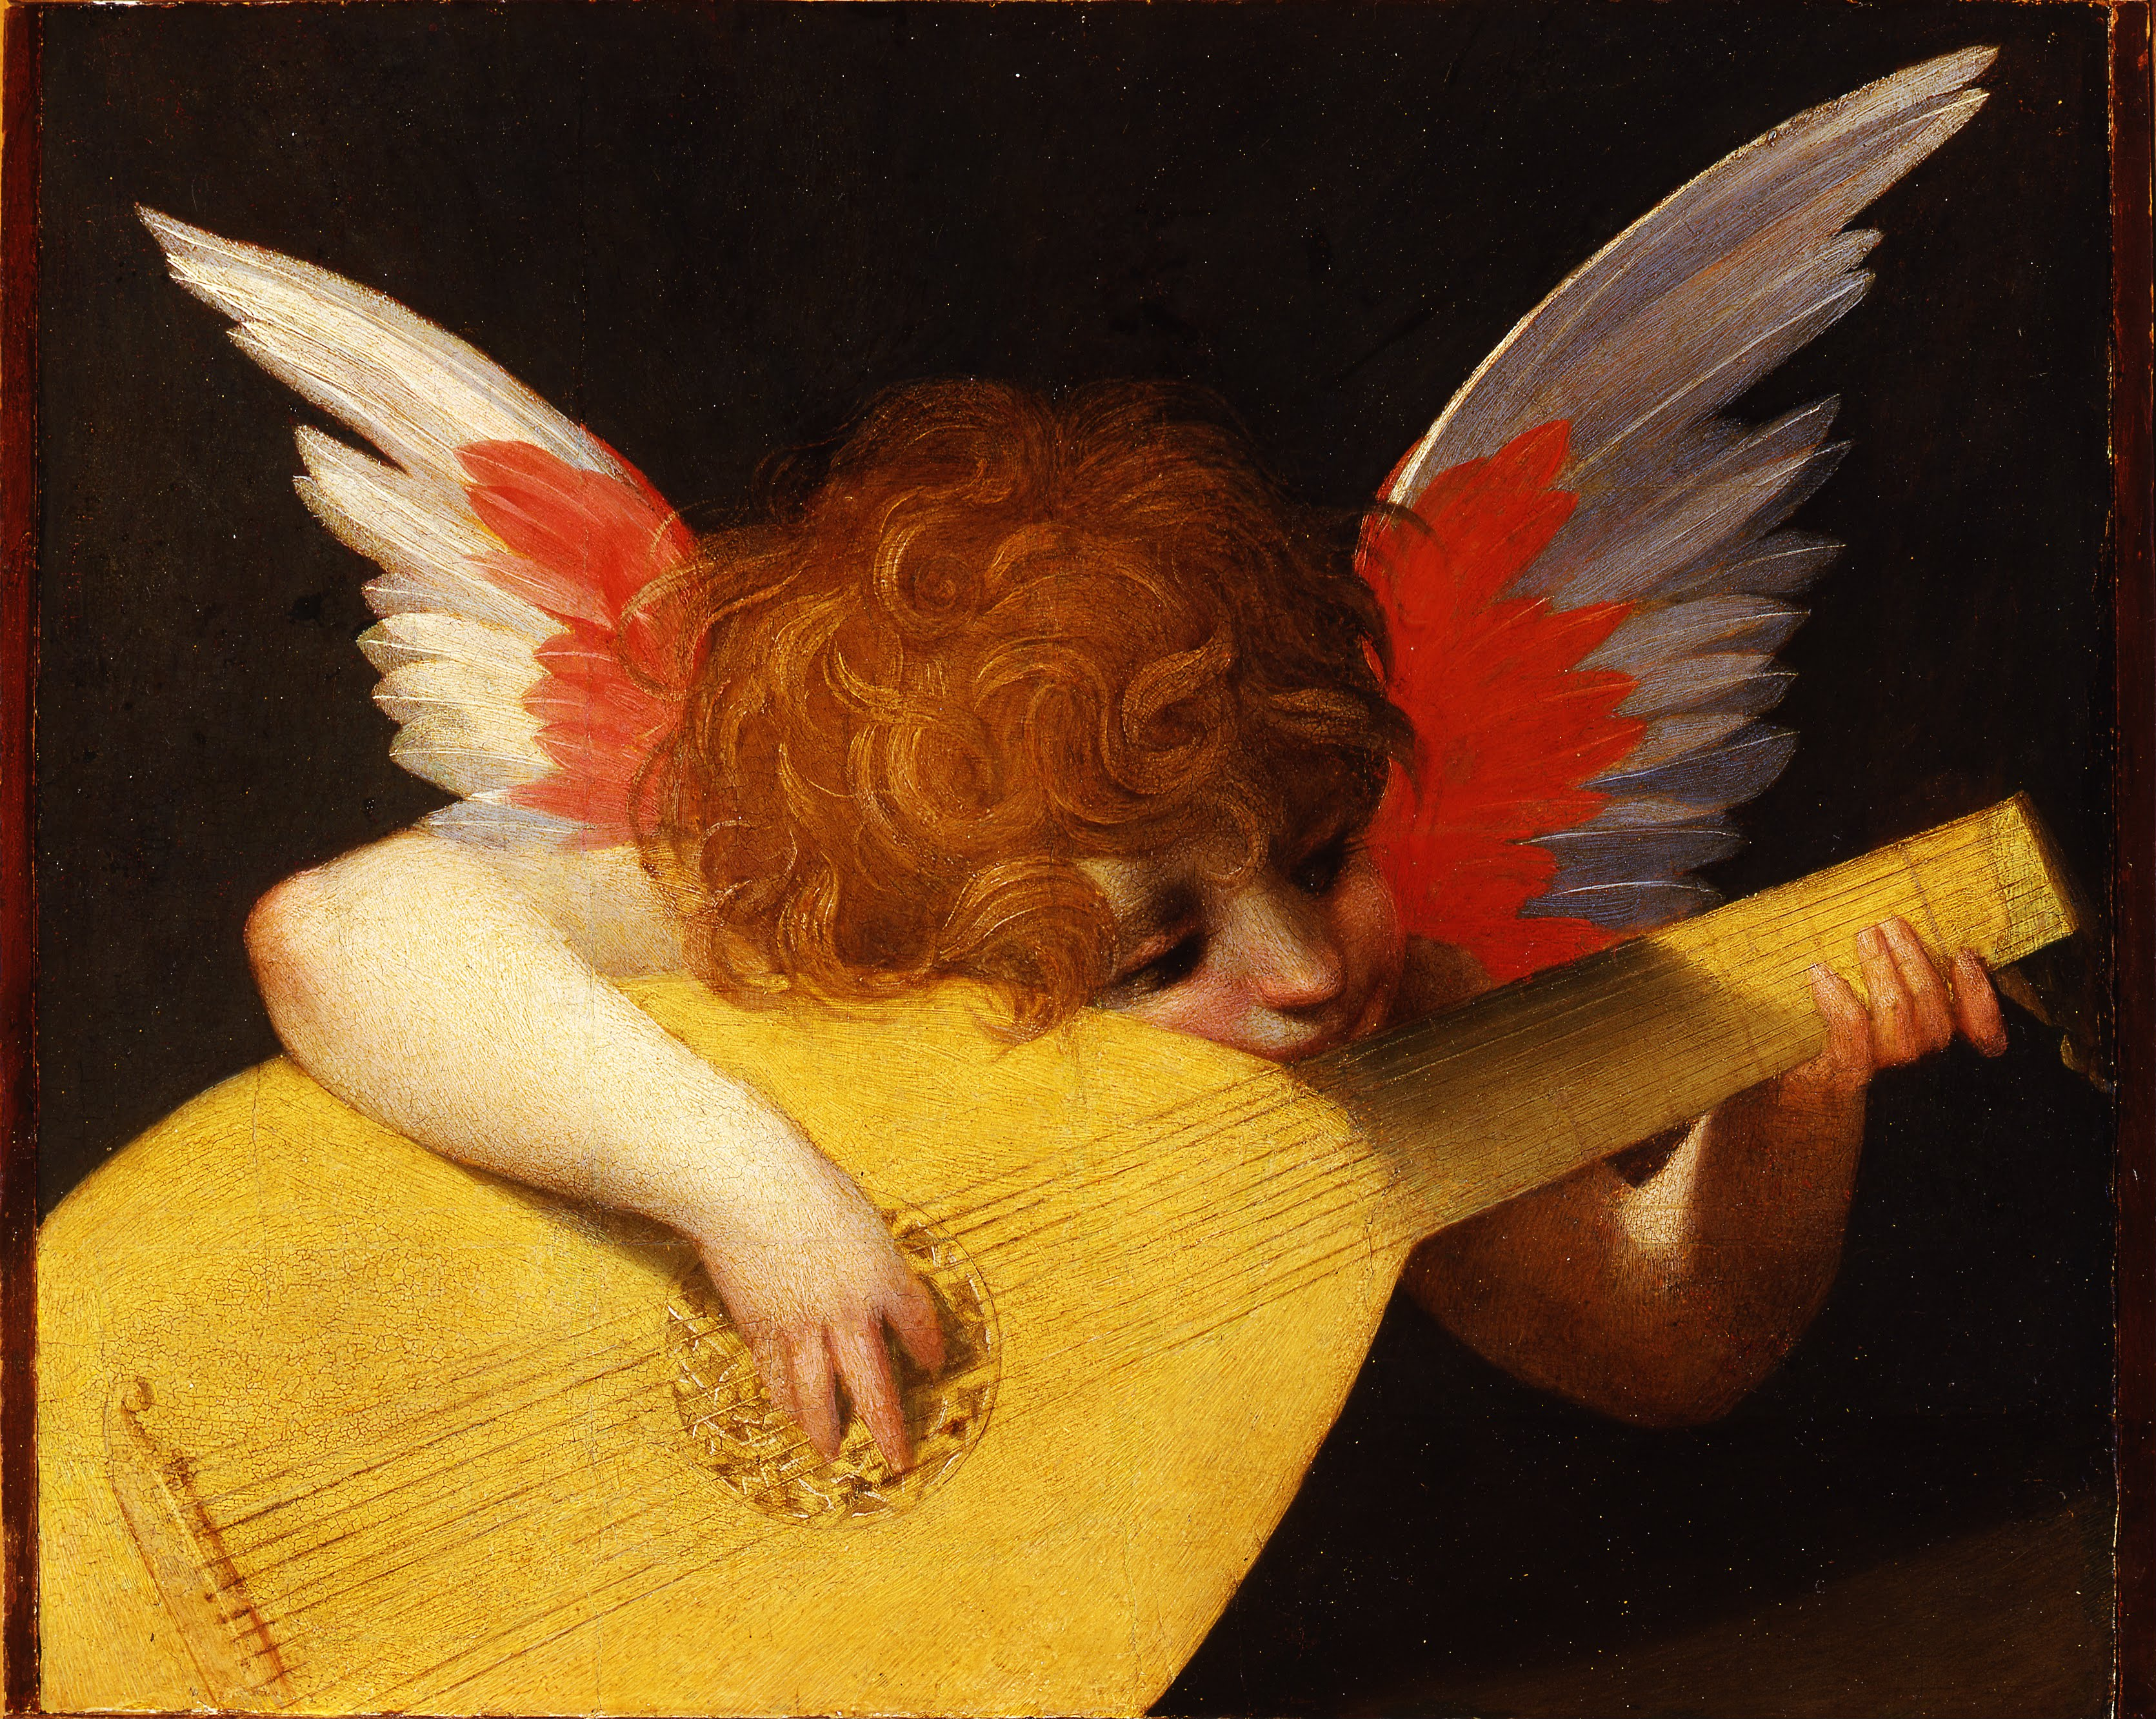 リュートを弾く天使 by Rosso Fiorentino - 1521年 - 39.5 x 47 cm 